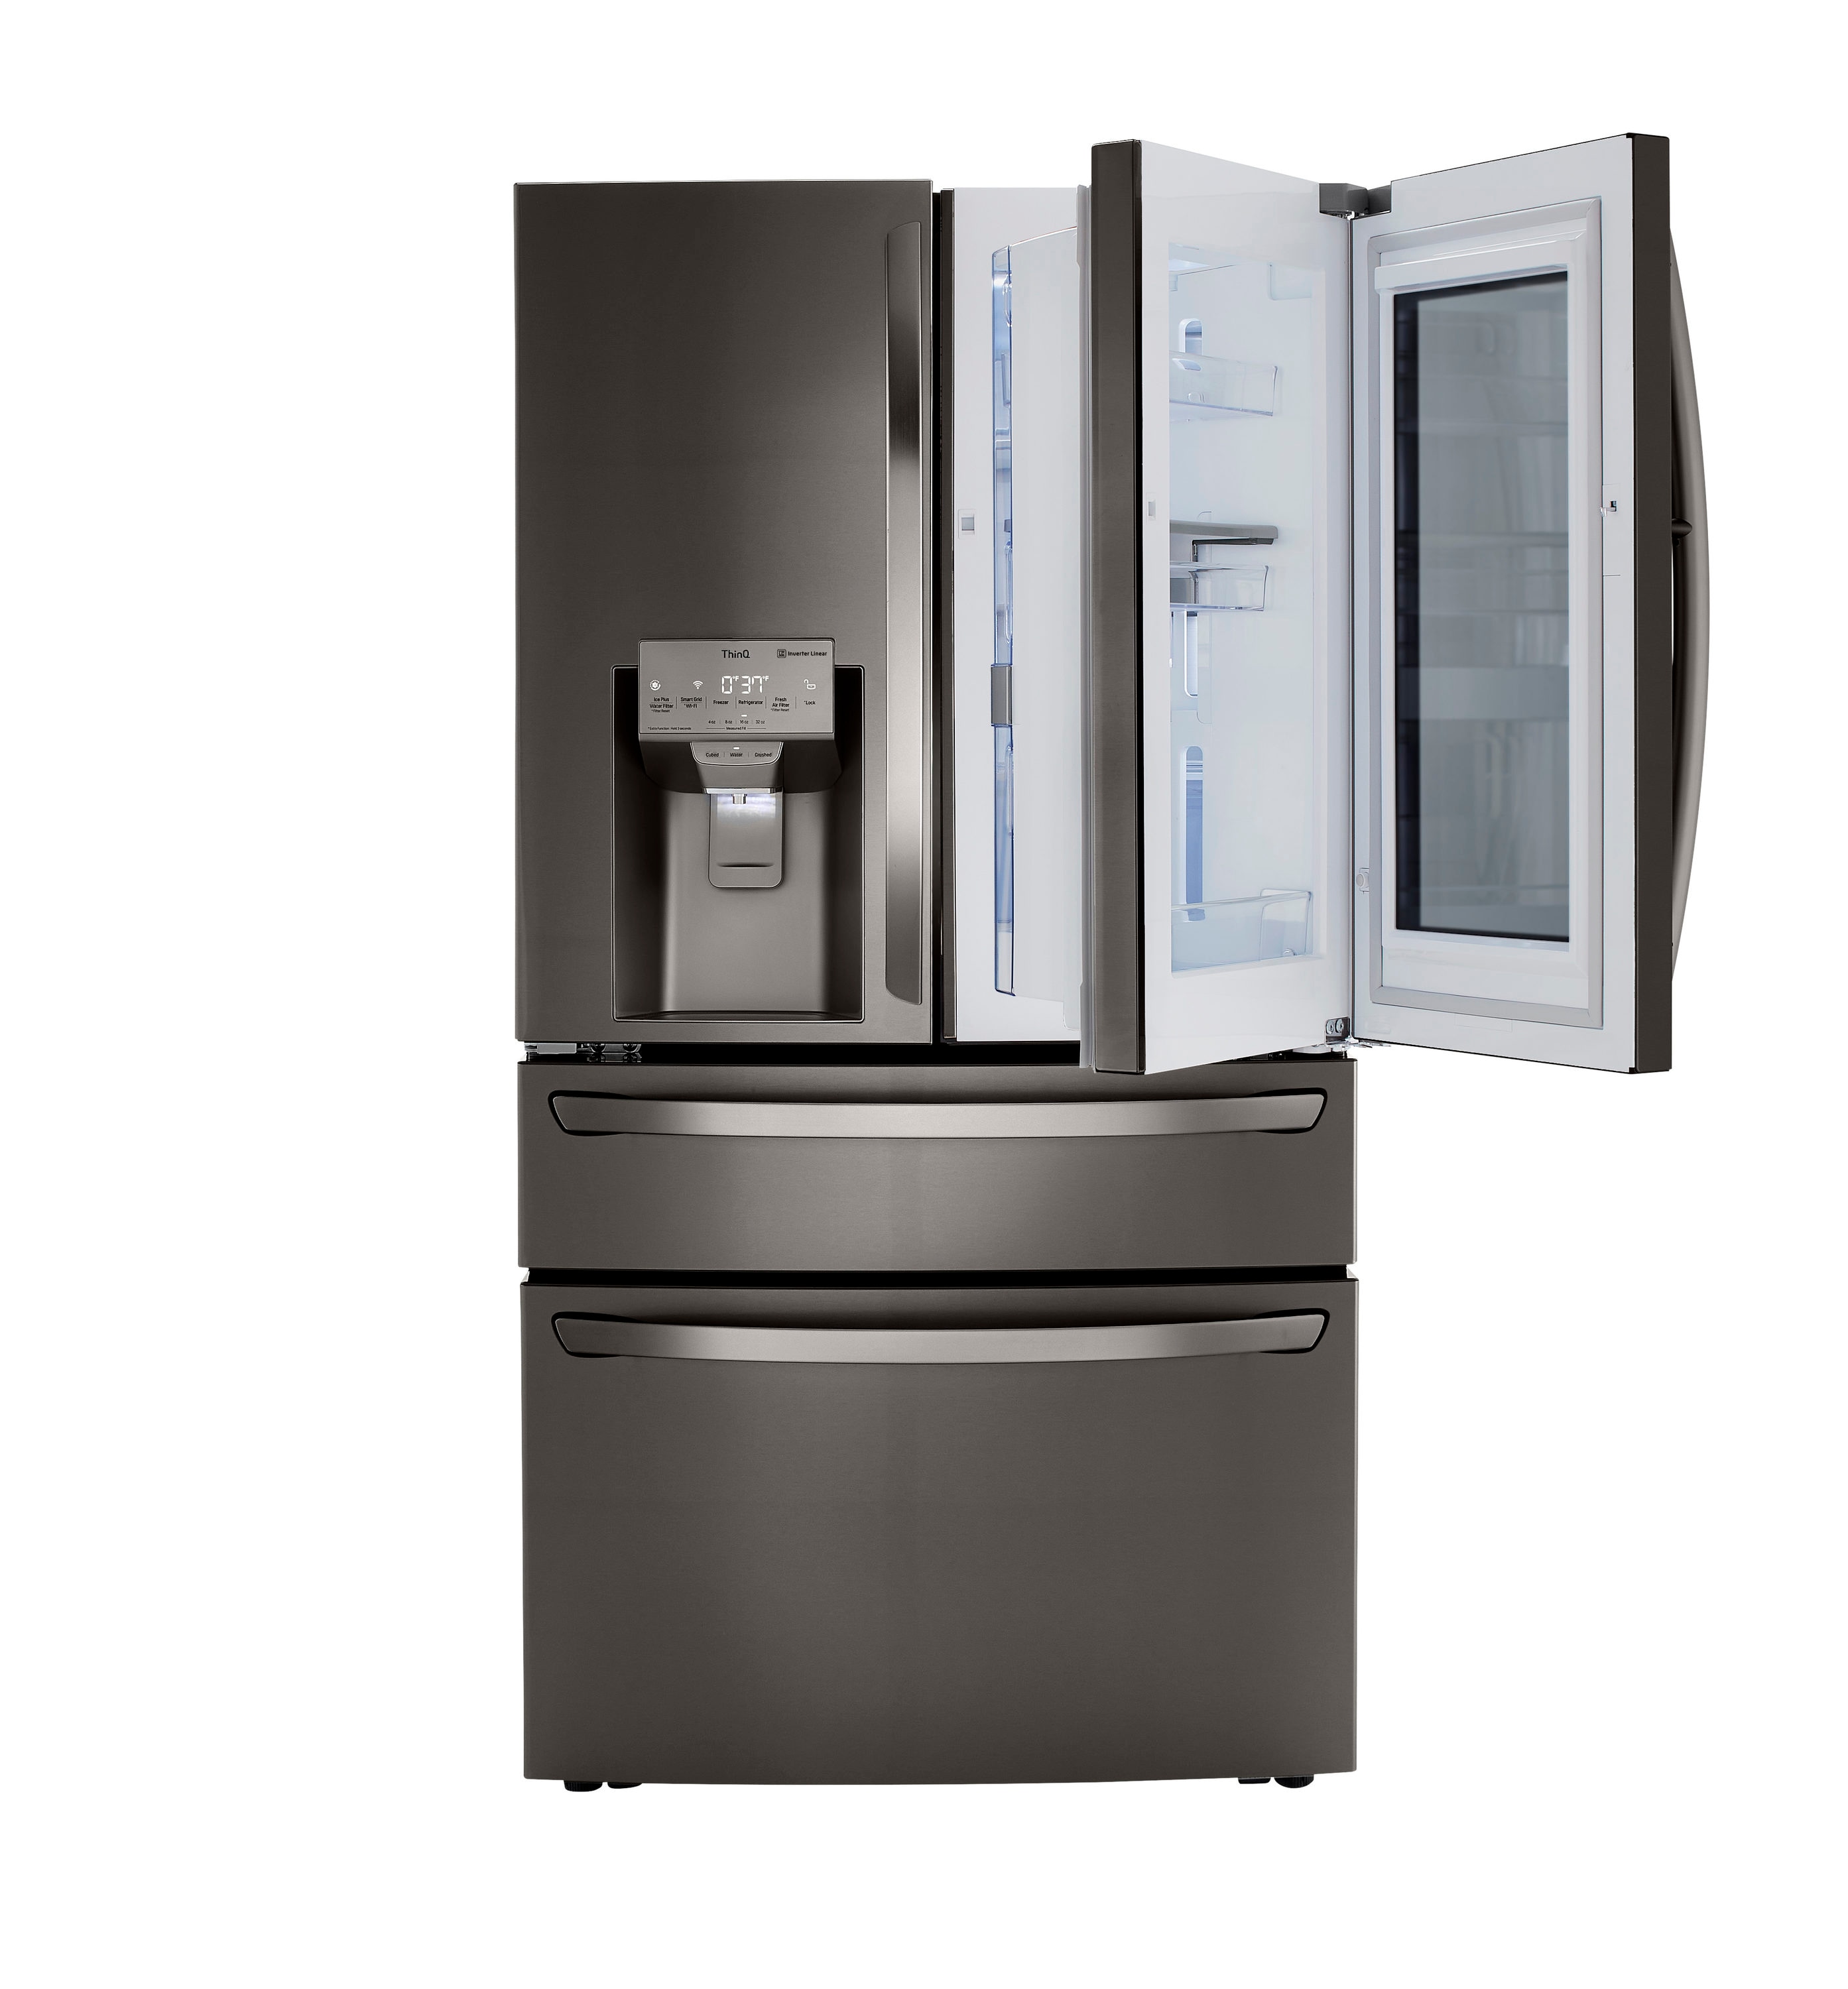 LG Craft Ice 22.5-cu ft 4-Door Counter-depth Smart French Door Refrigerator  with Dual Ice Maker and Door within Door (Fingerprint Resistant Steel)  ENERGY STAR in the French Door Refrigerators department at